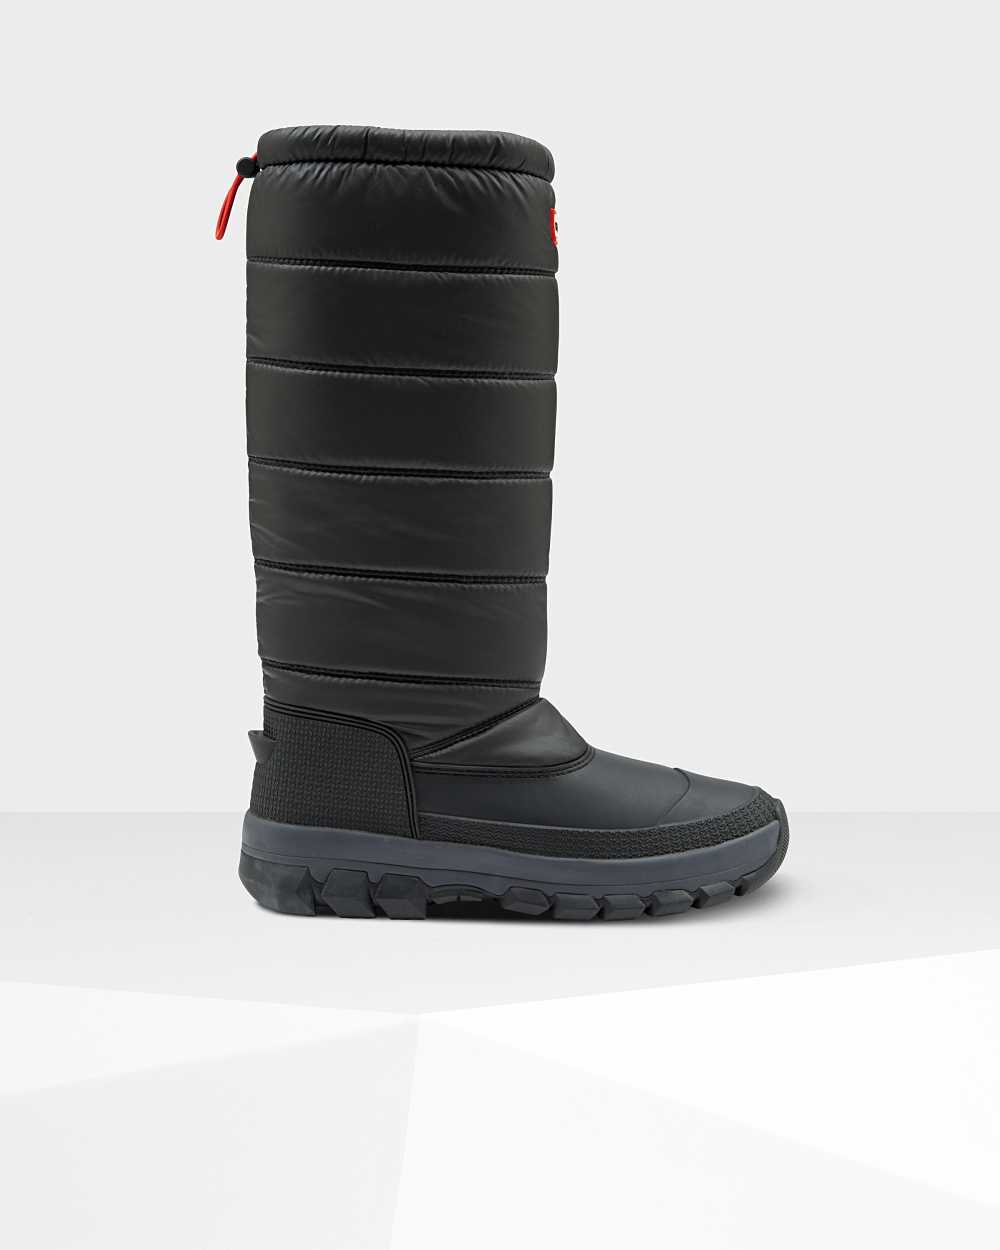 Hunter Women's Original Insulated Tall Snow Boots Black,XUWL84517